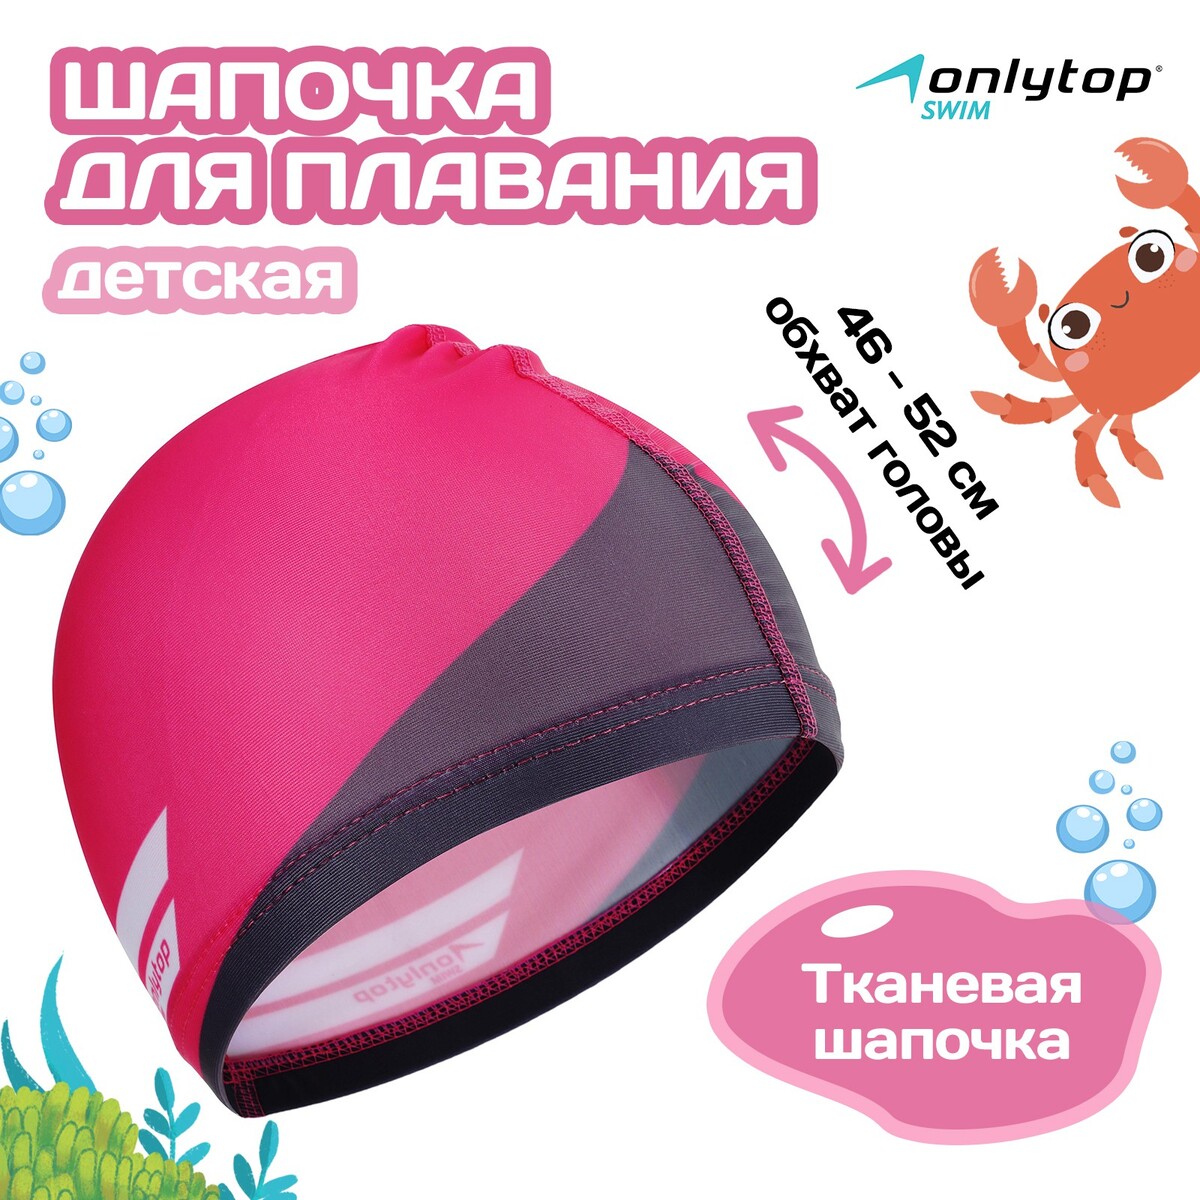 Шапочка для плавания детская onlitop swim, тканевая, обхват 46-52 см надувной спасательный жилет summertime swim vest s розовый